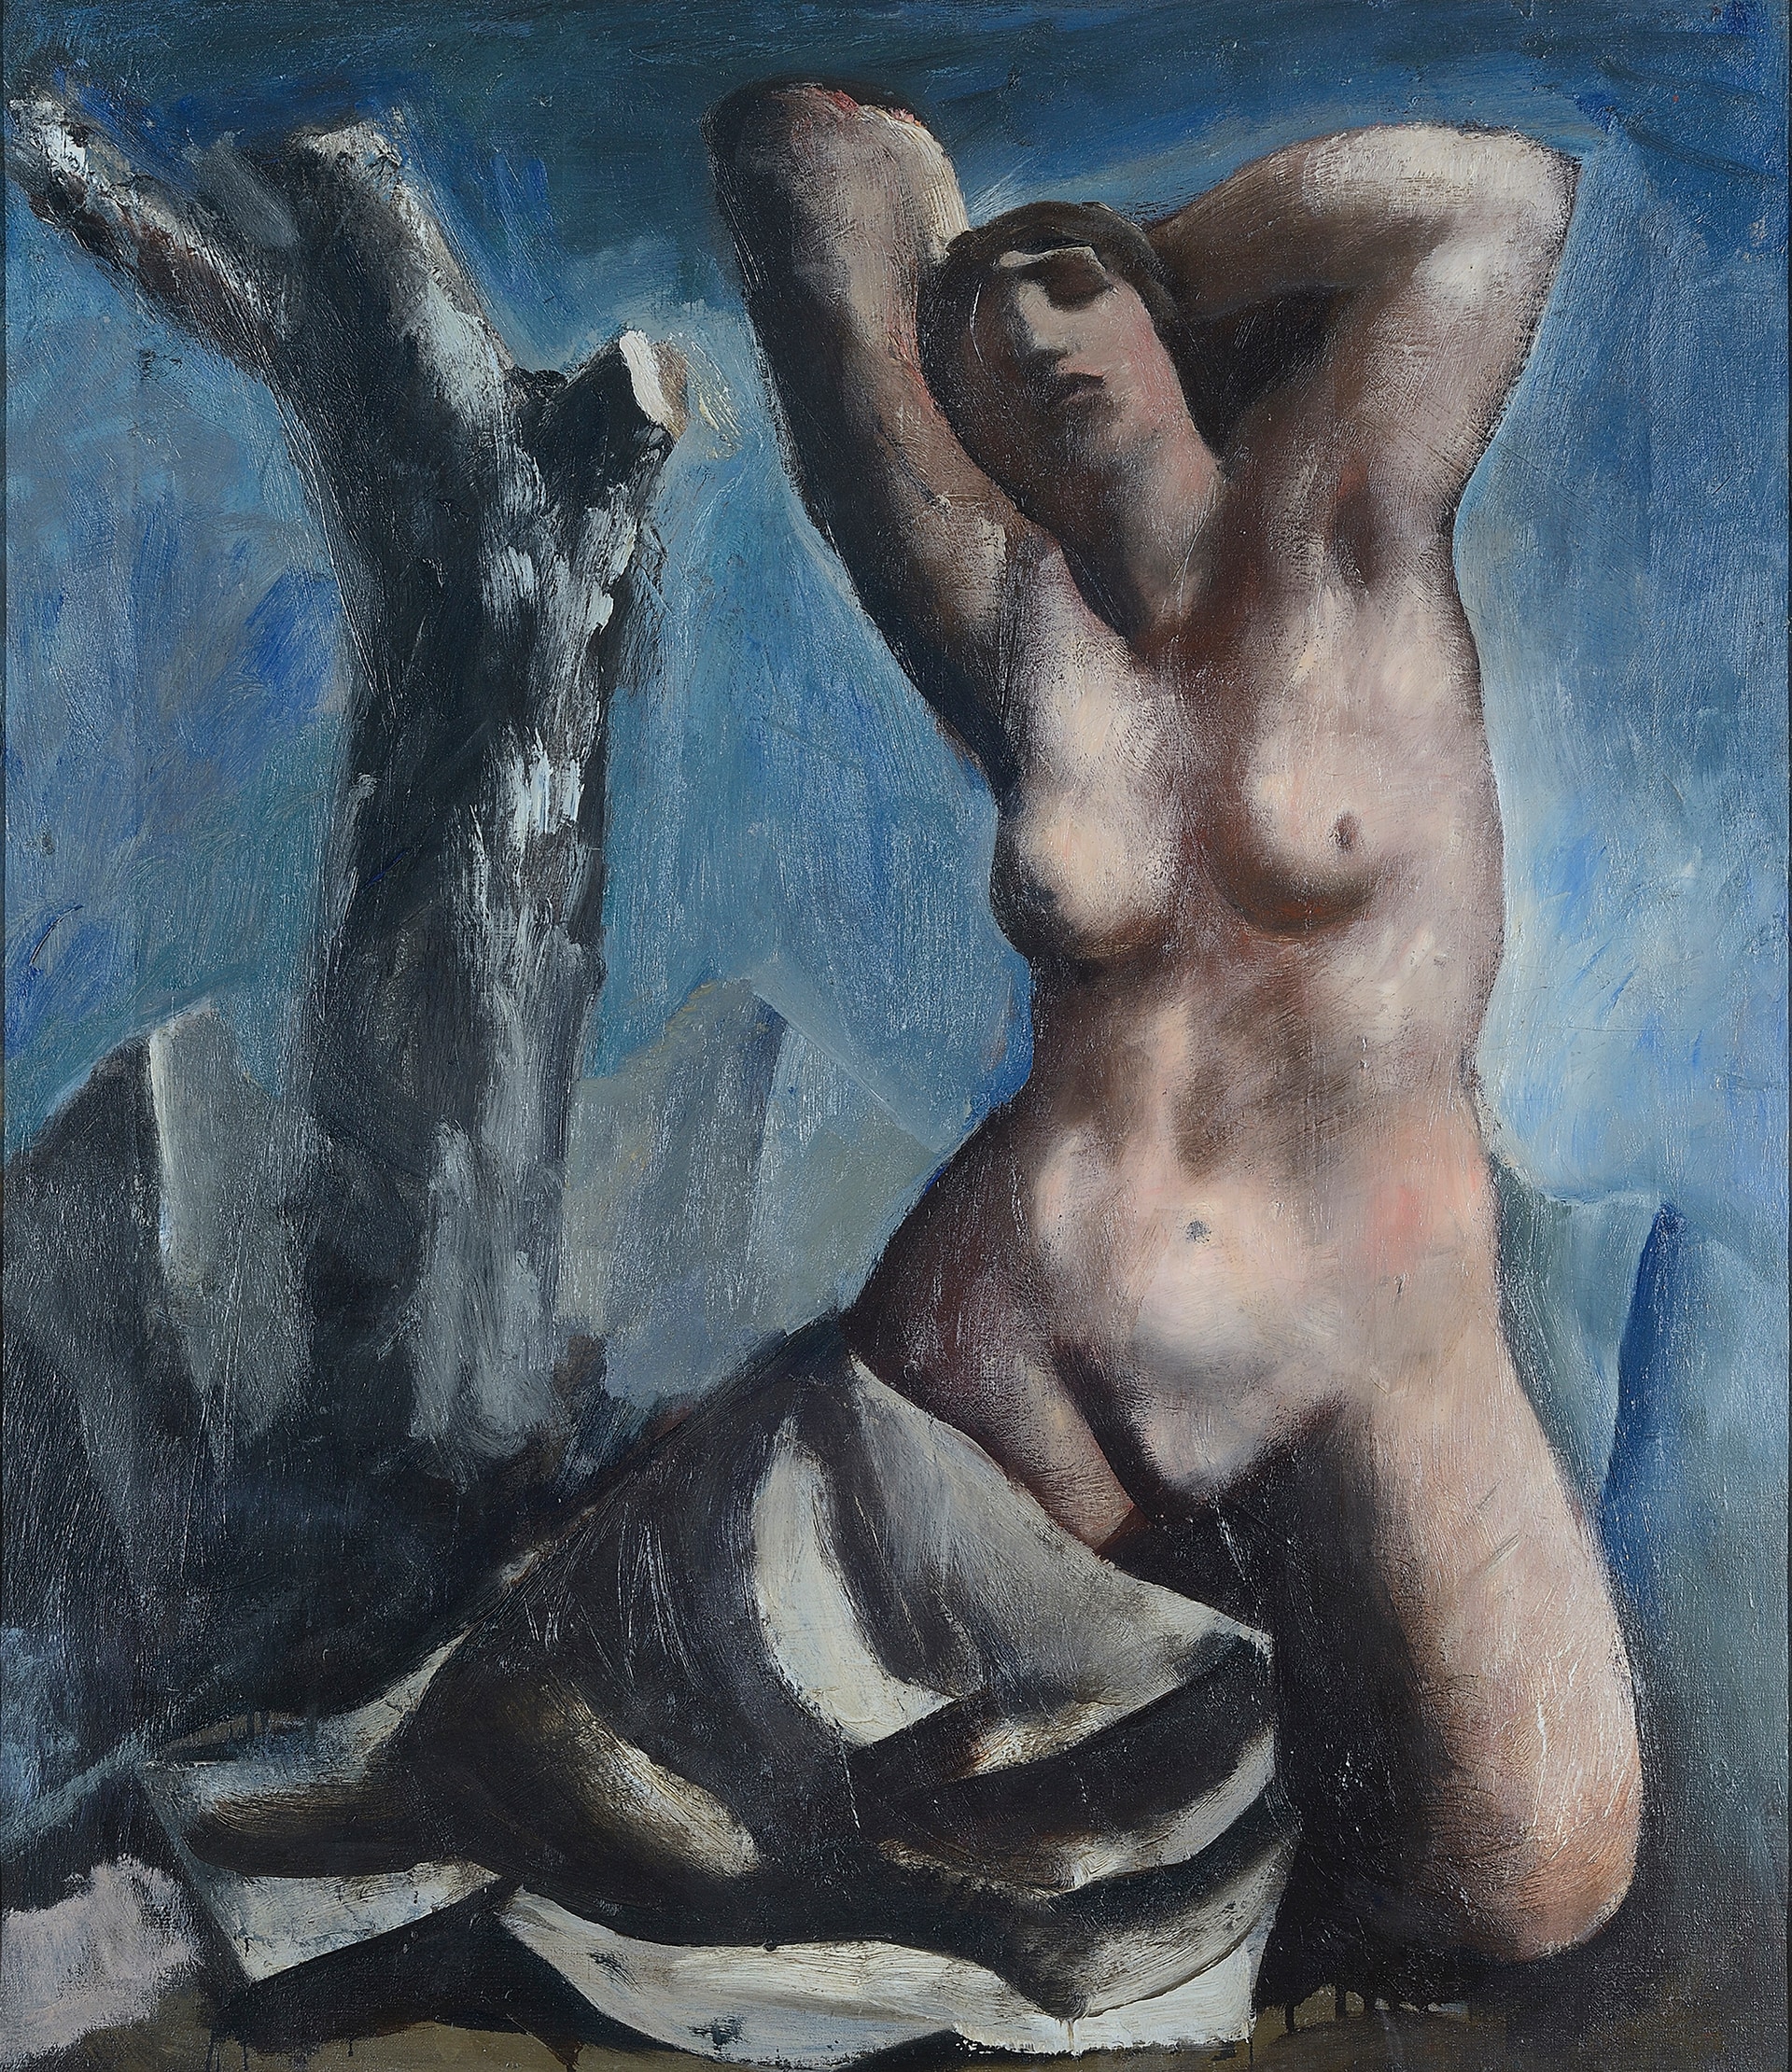 Mario Sironi, Nudo e albero 1931 ca. olio su tela, 80 x 70 cm Monza, collezione privata © Mario Sironi, by SIAE 2021 